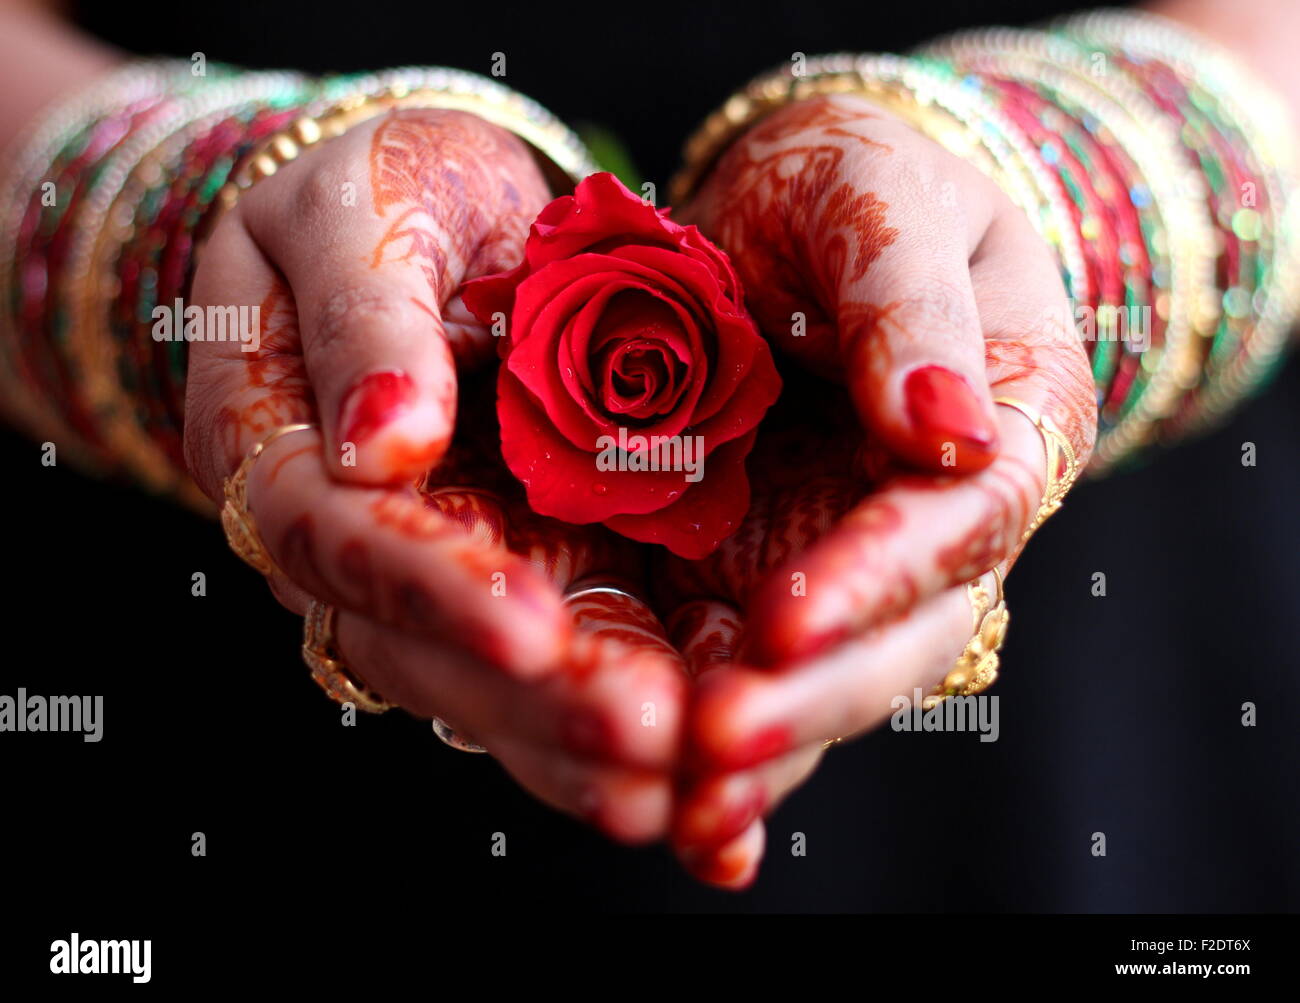 Las manos con henna hembra rosa roja saludos Foto de stock